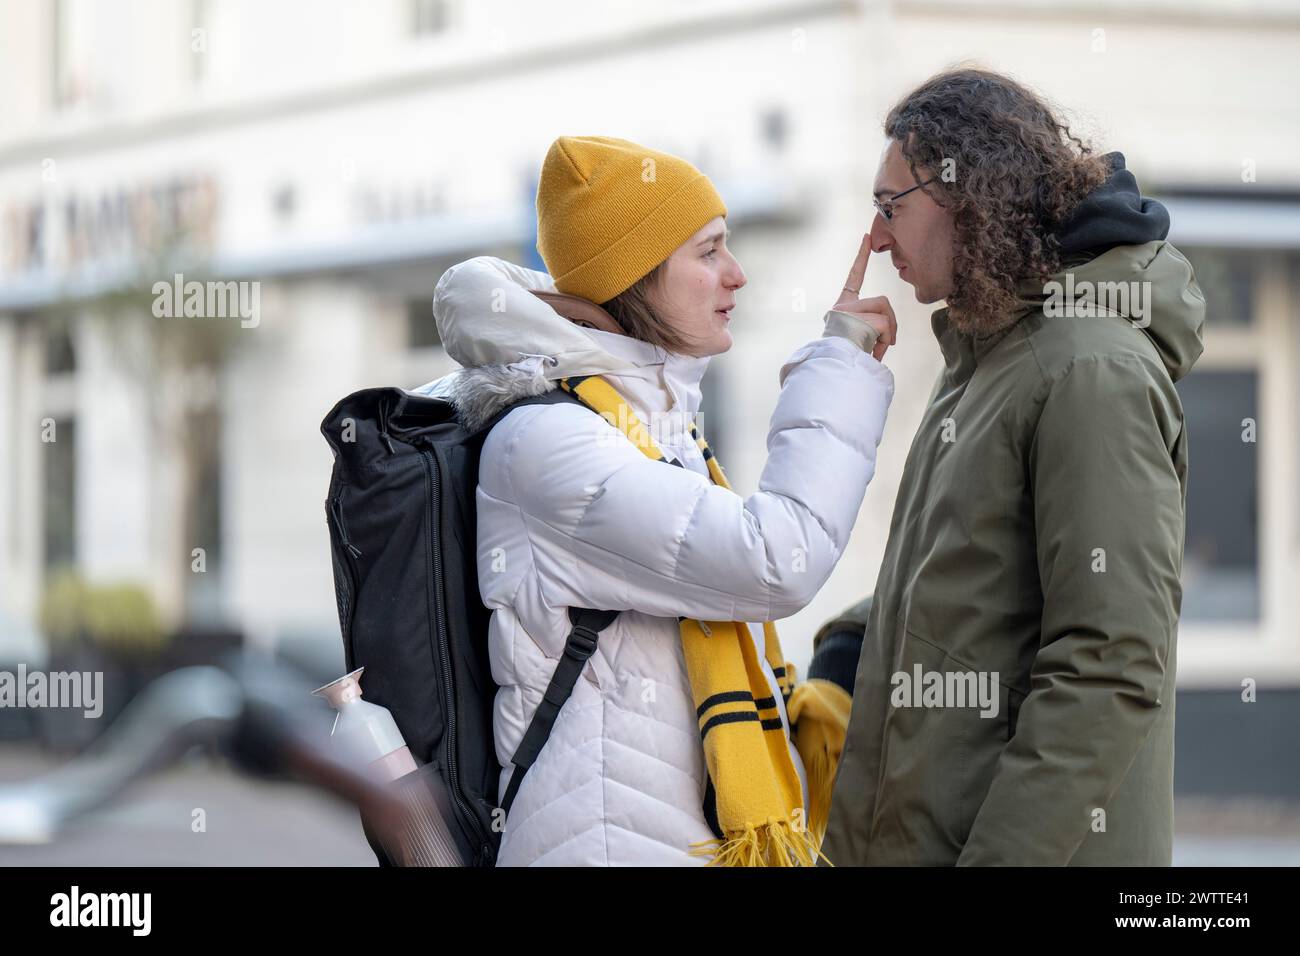 Ein ehrlicher Moment, in dem eine Person auf einer städtischen Straße spielerisch die Nase einer anderen Person berührt. Stockfoto